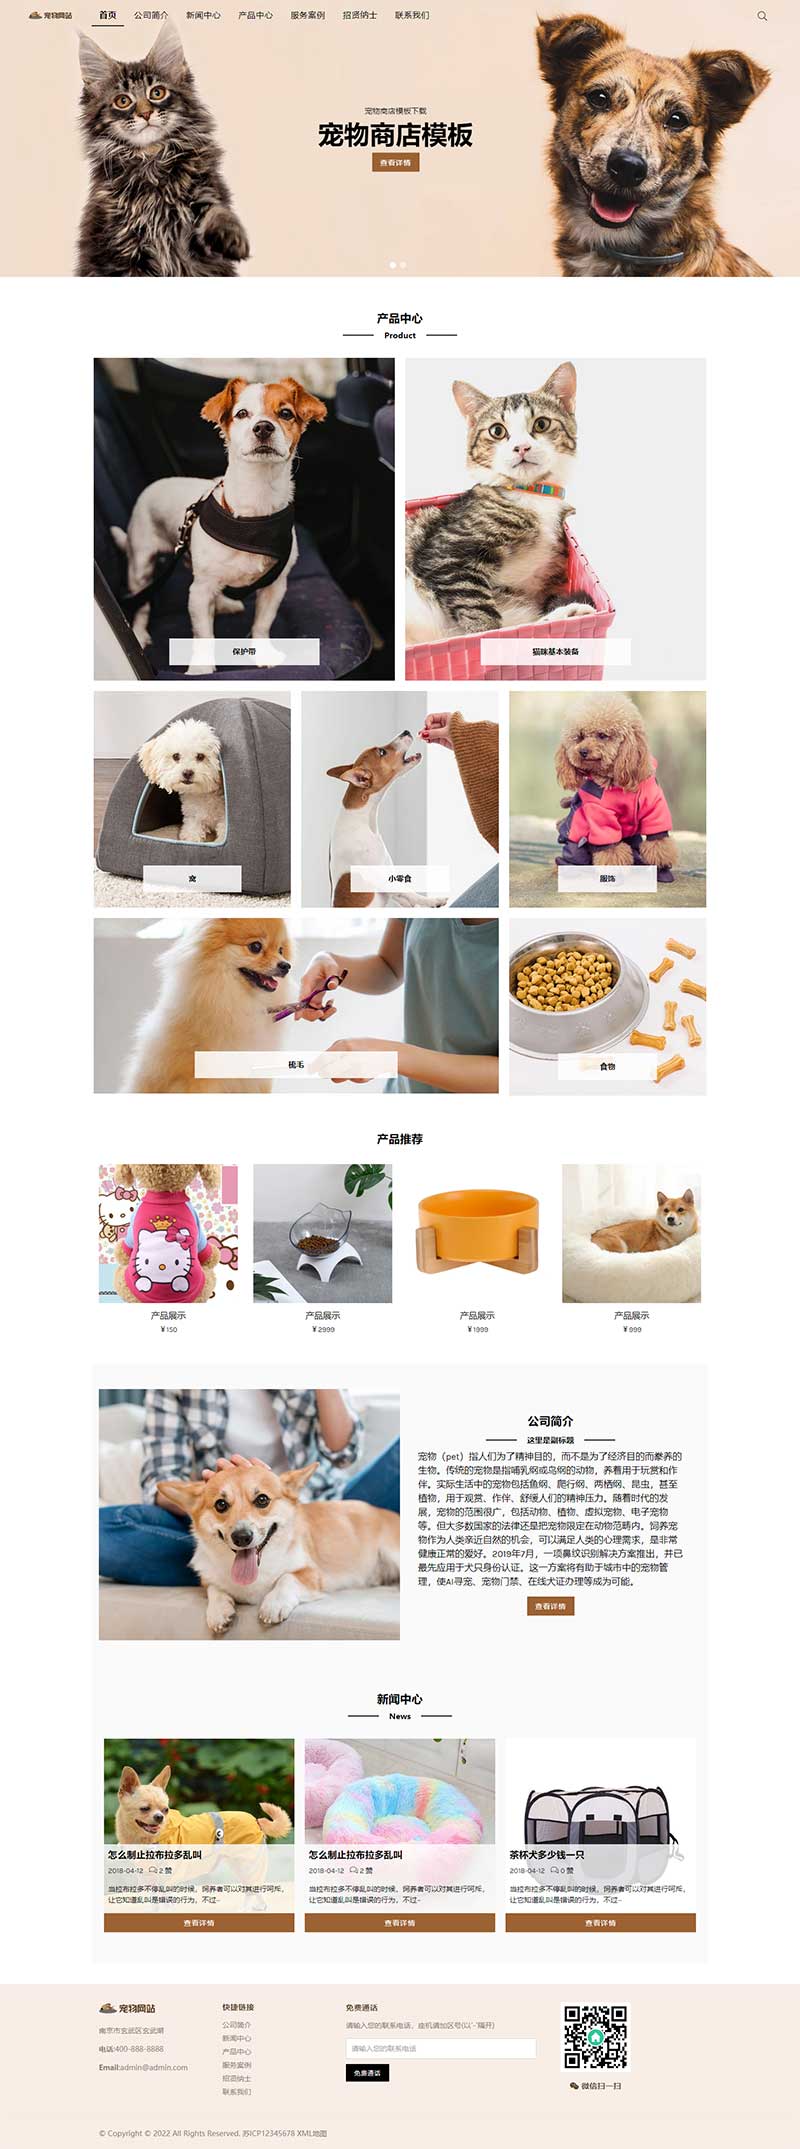 宠物商店宠物装备类网站pbootcms模板 宠物网站源码